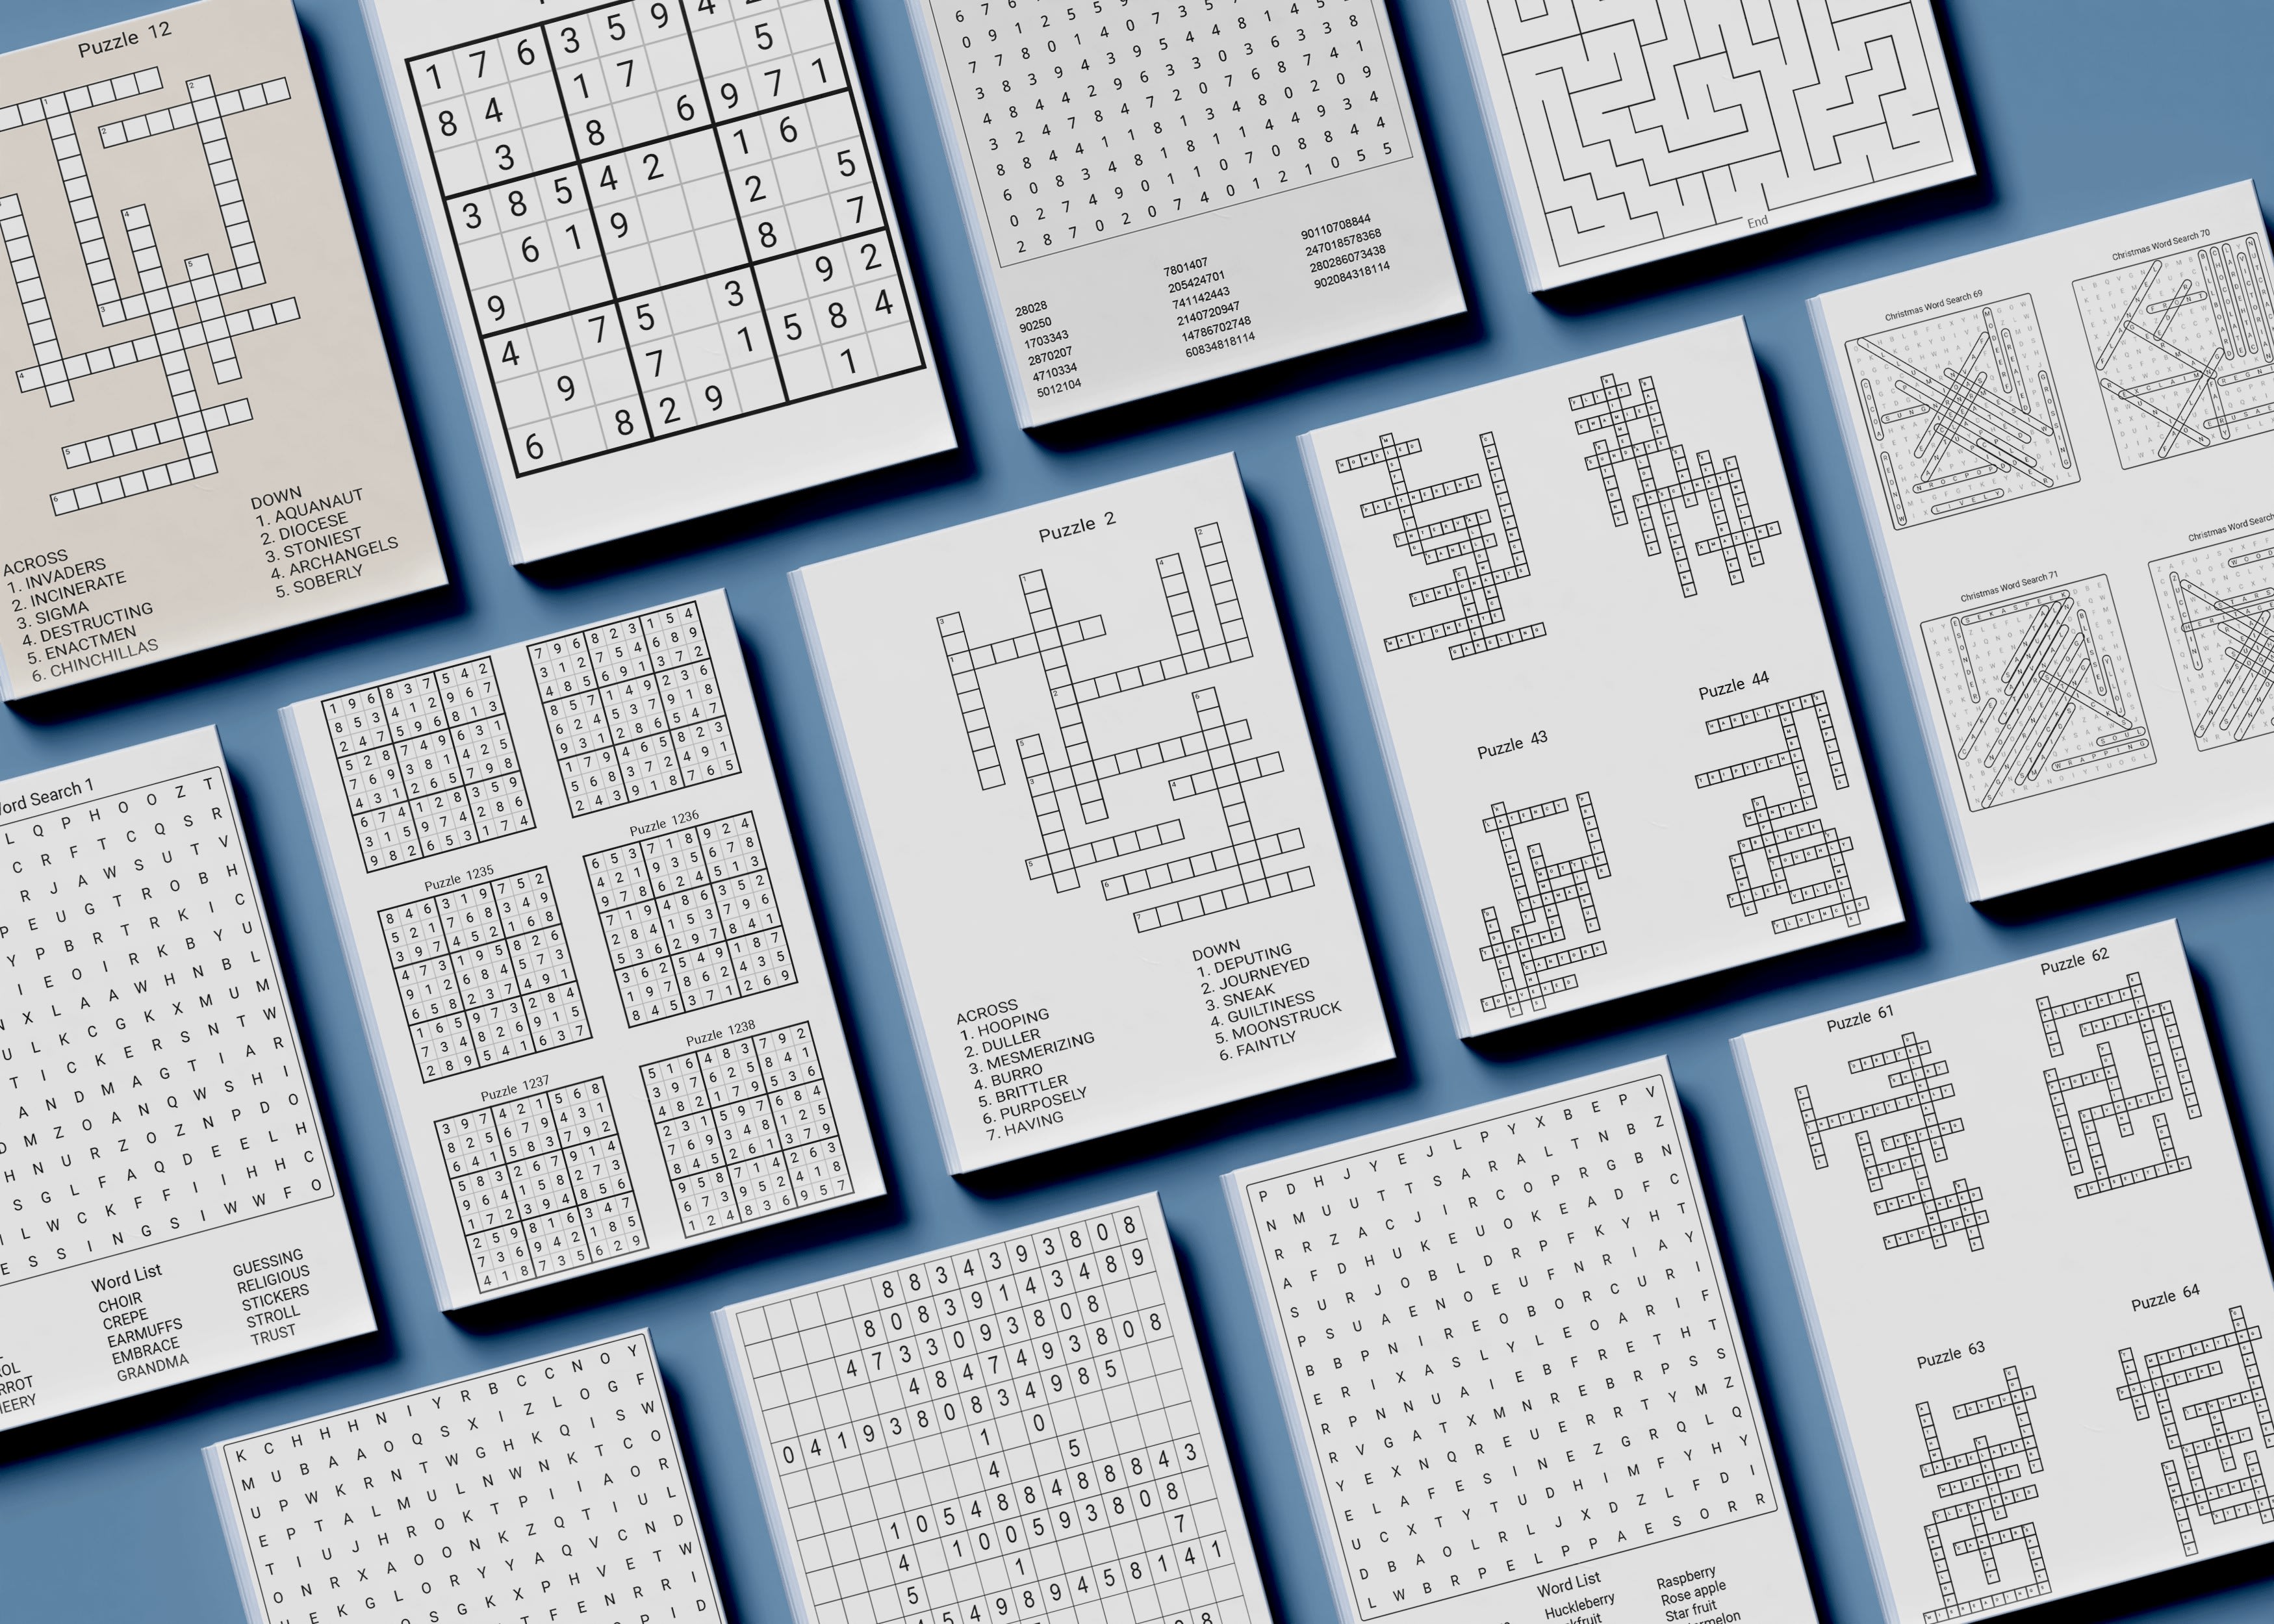 Sudoku per Adulti - Facile Medio e Difficile: 100 Puzzles con